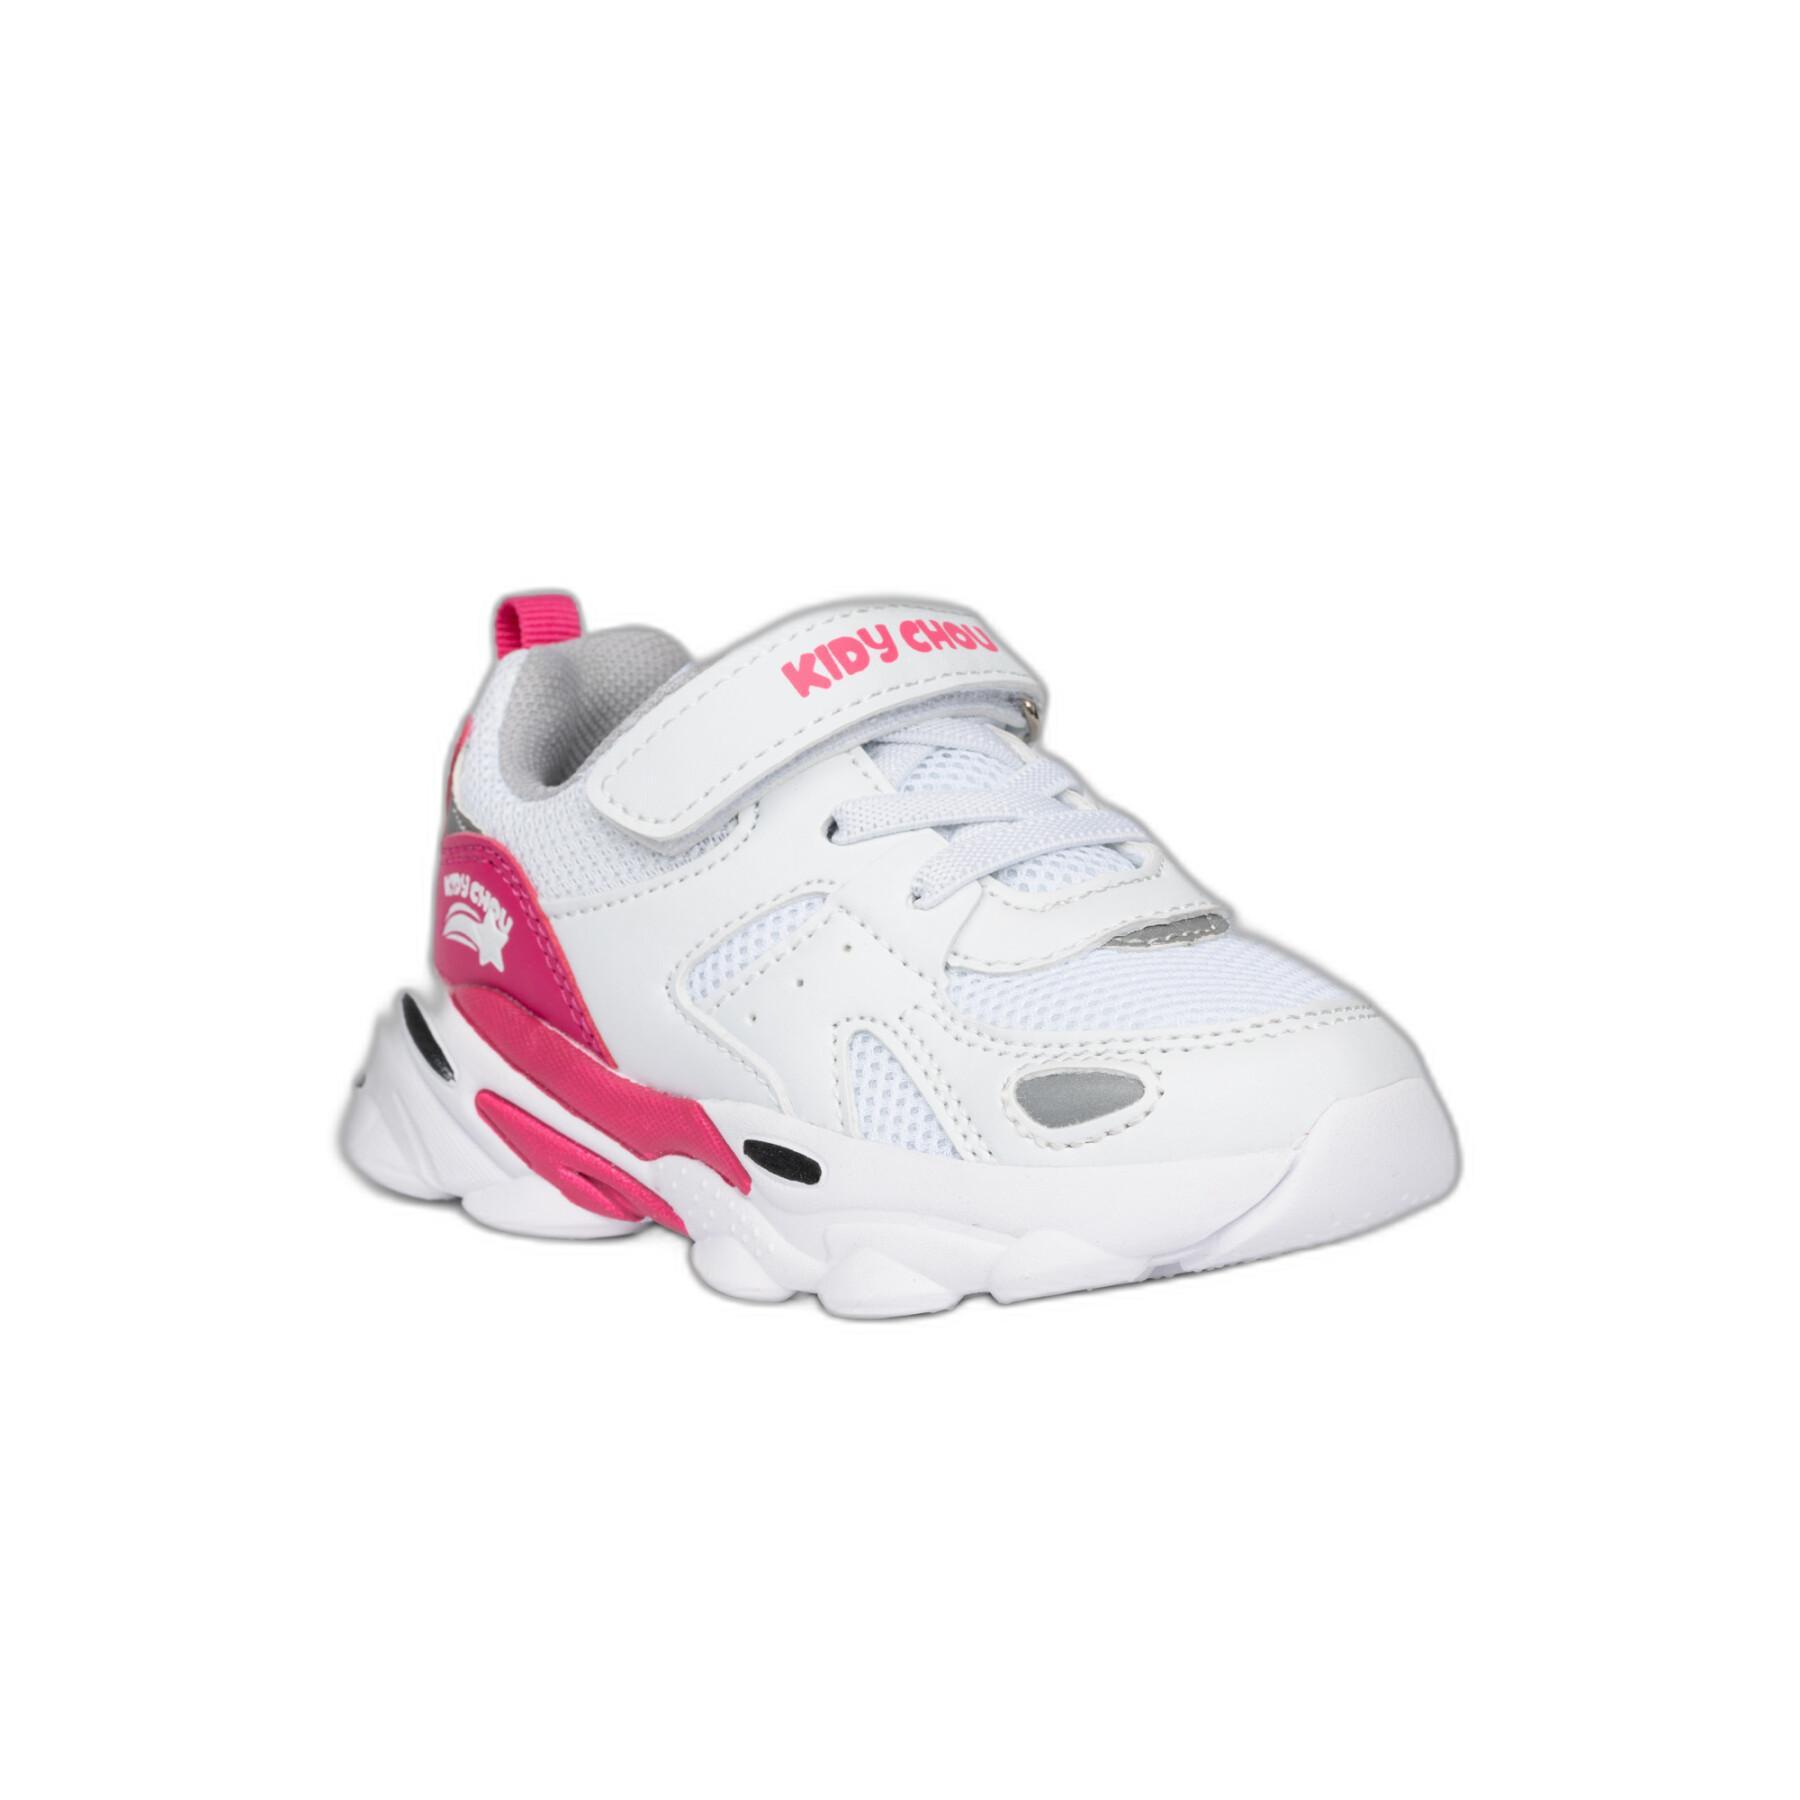 Sneakers für Mädchen Kidy Chou Run